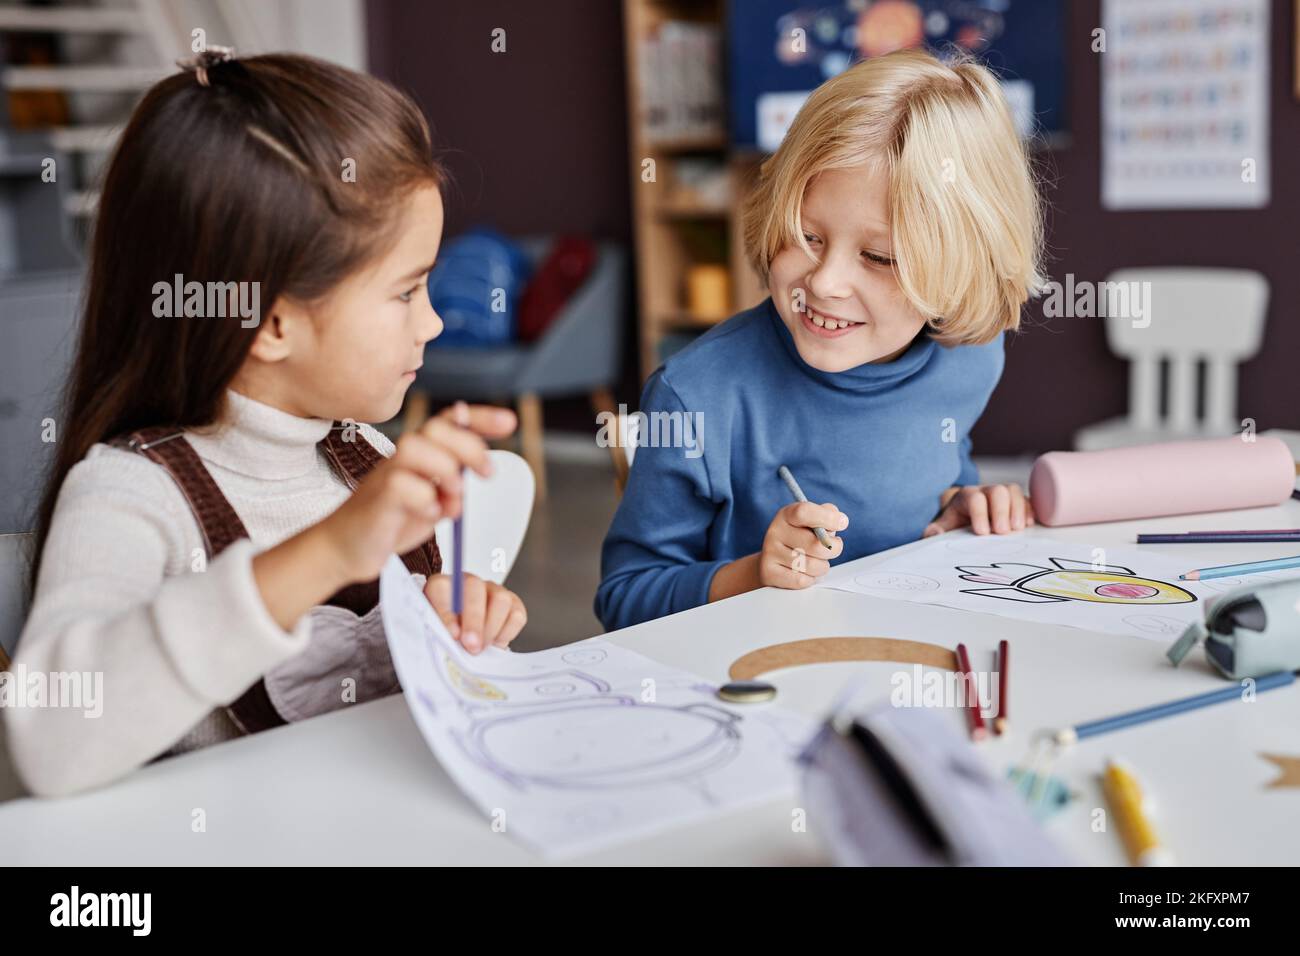 Petit garçon blond regardant l'image dessinée et tenue par son camarade de classe le lui montrant à la leçon de dessin à l'école maternelle Banque D'Images